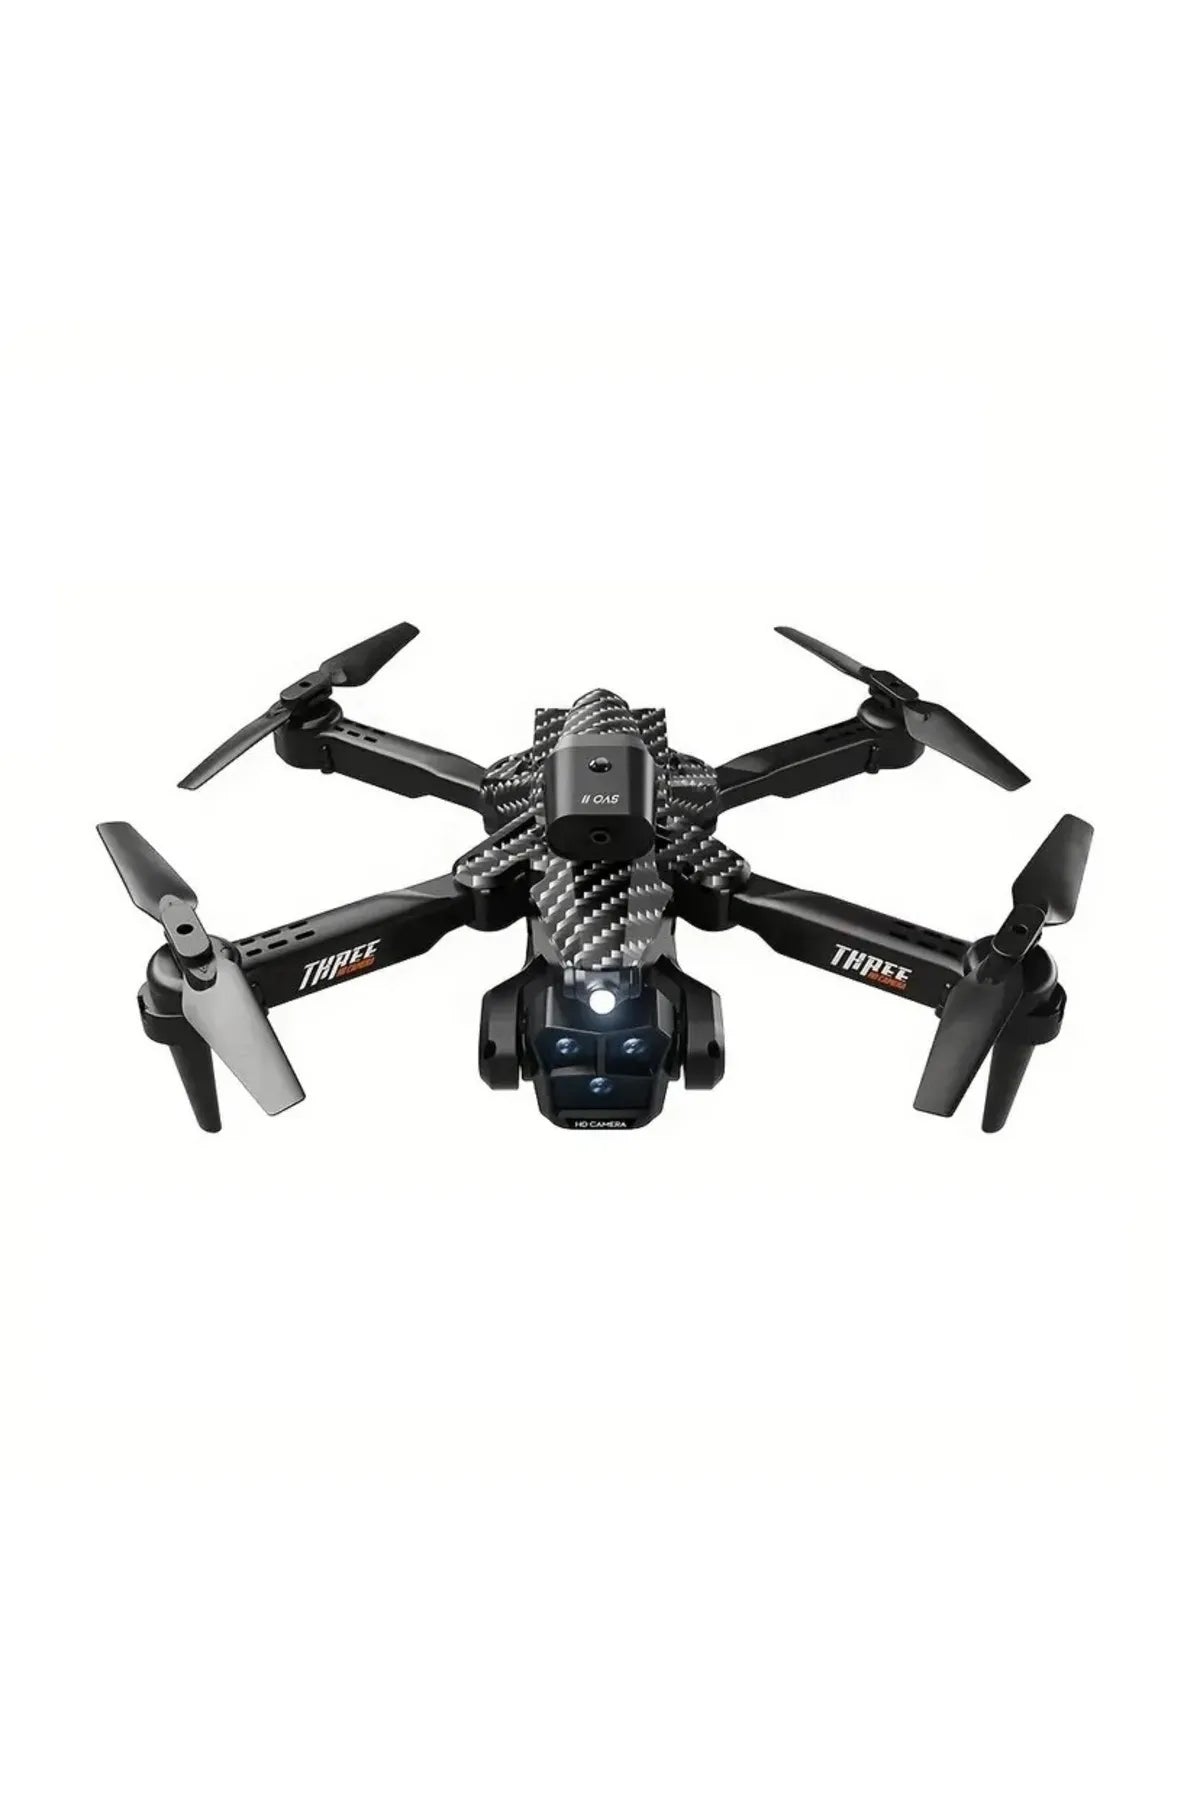 K10 Max 無人機 - 4k 高畫質攝影機避障航拍無刷可折疊四軸飛行器禮品玩具